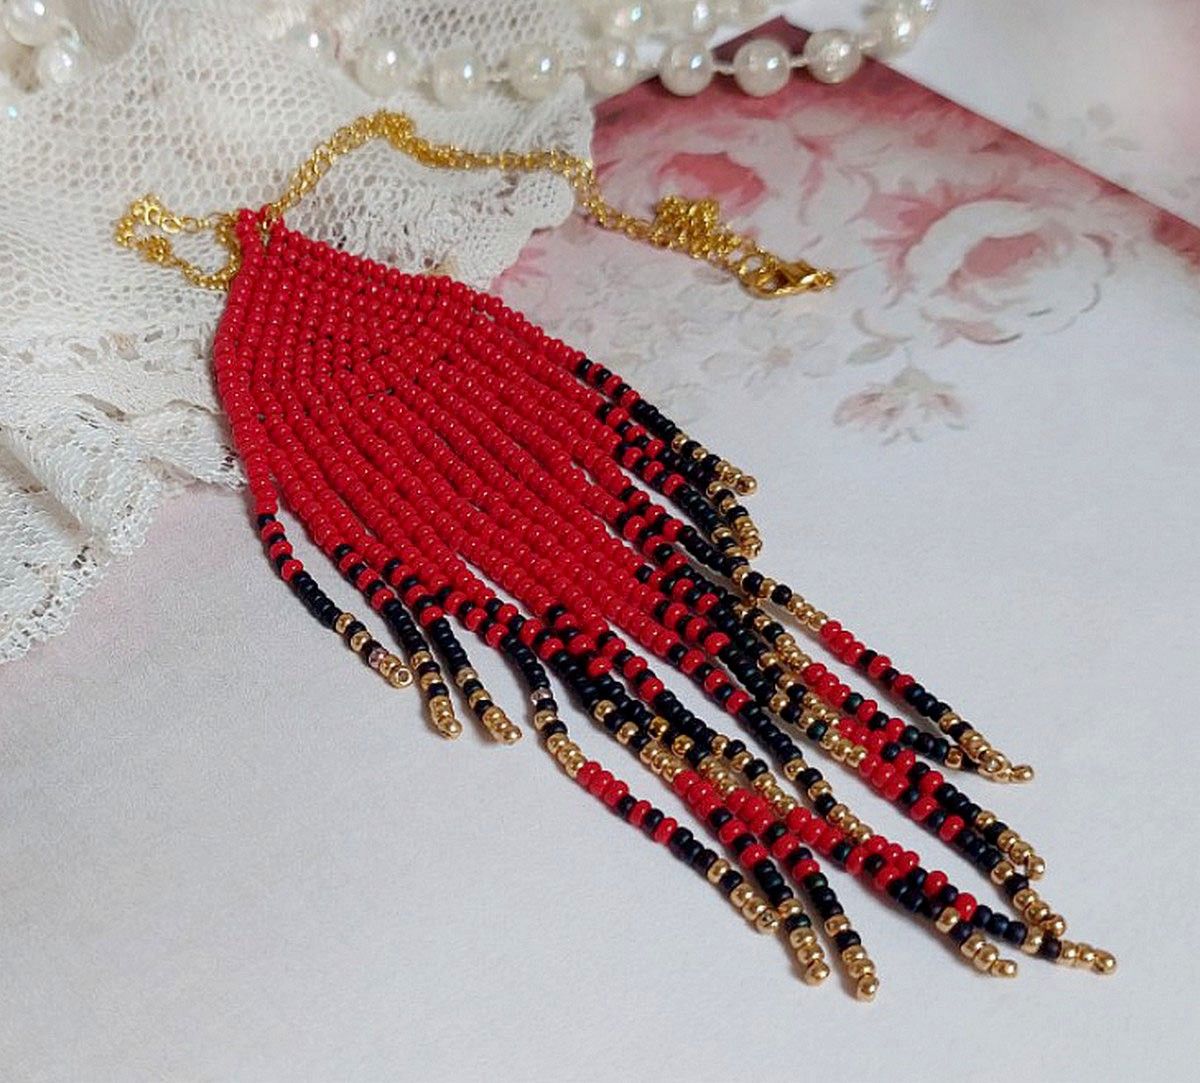 Colgante Red Swirls creado con cuentas de semillas de calidad y una cadena chapada en oro